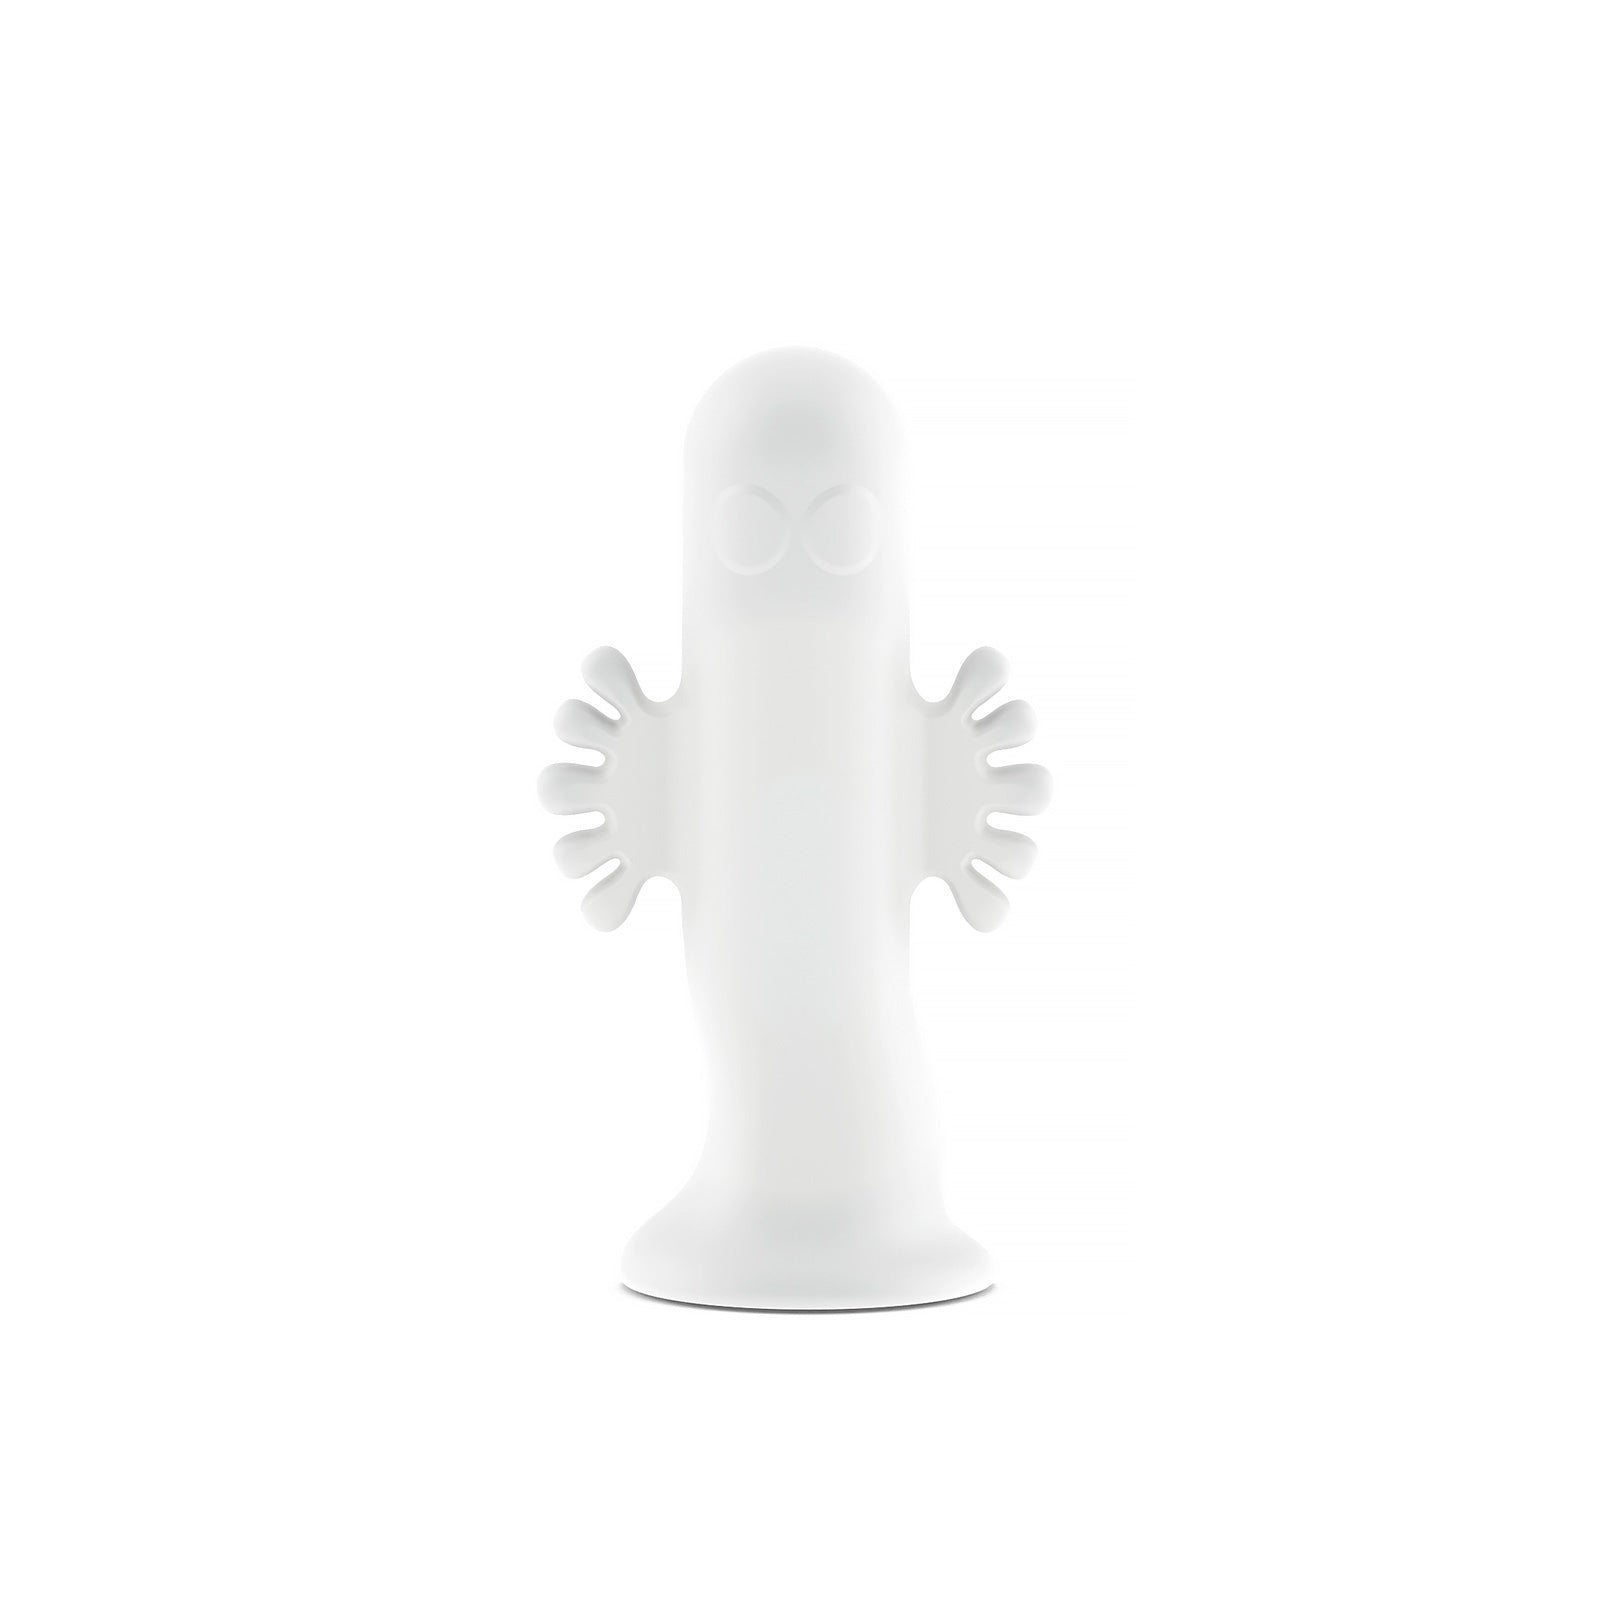 Moomin Light - Hattivatti S - Hattifattener table lamp